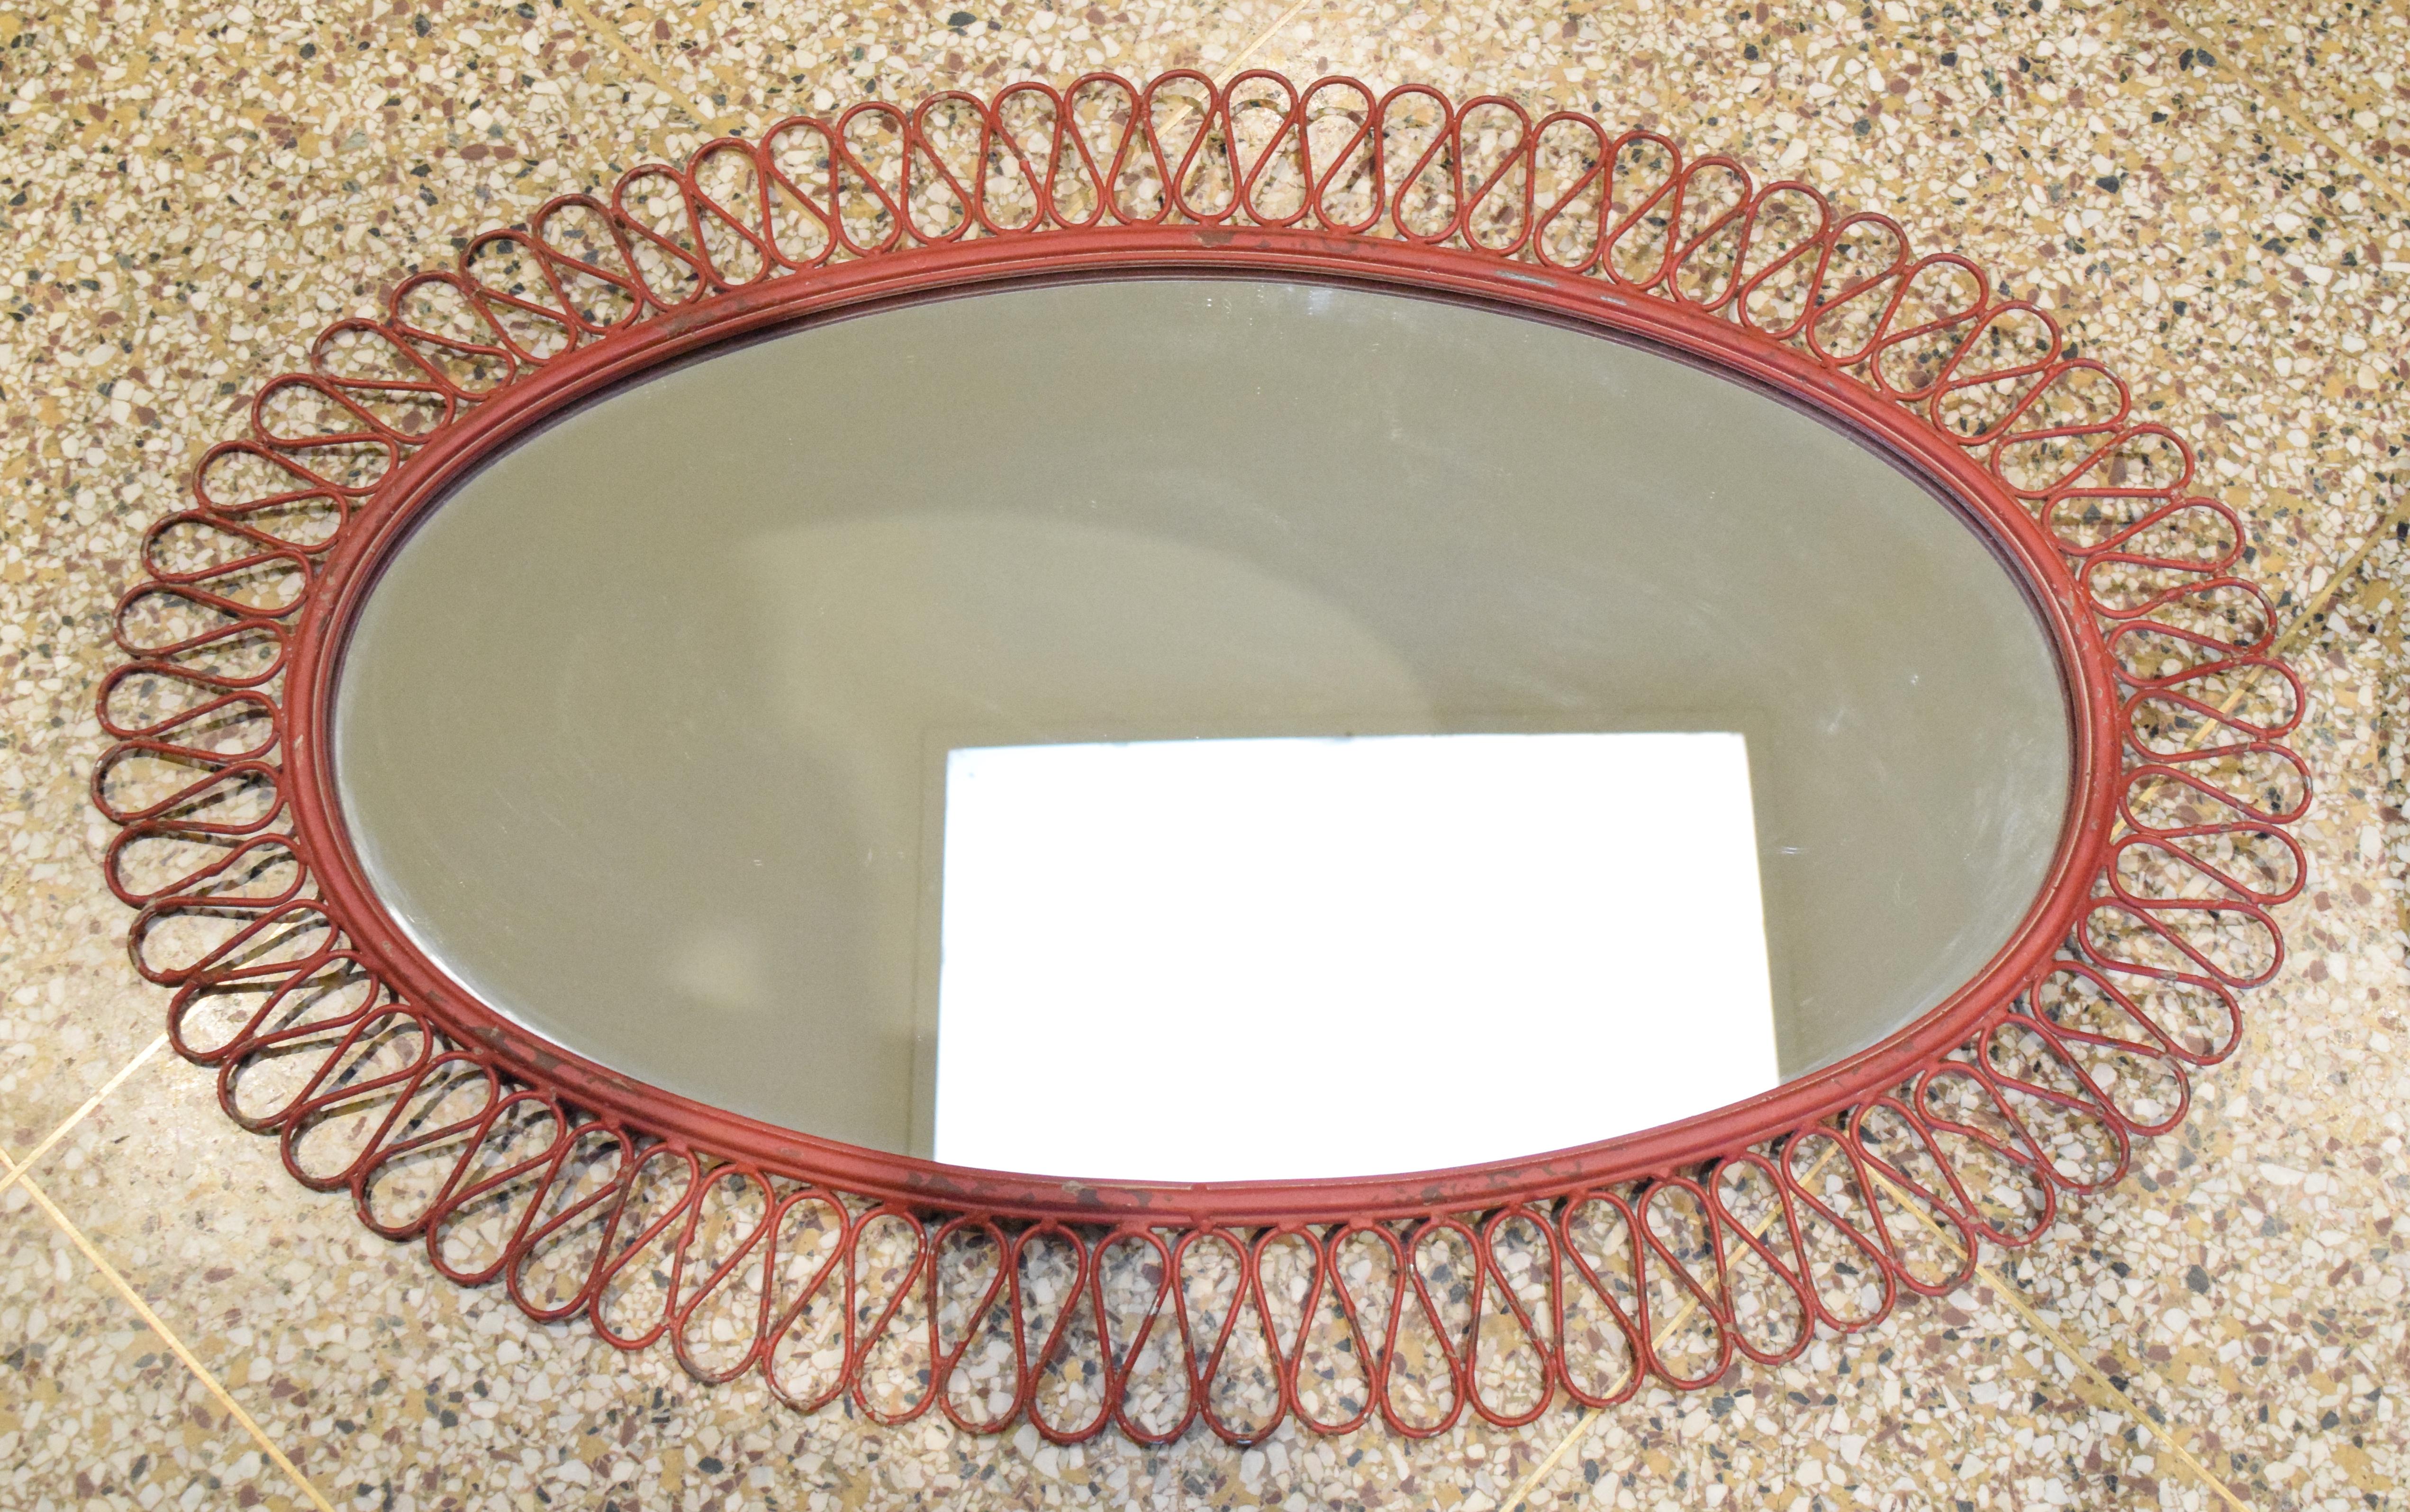 Oval wall mirror in original red finish by Maurizio Tempestini for John Salterini.